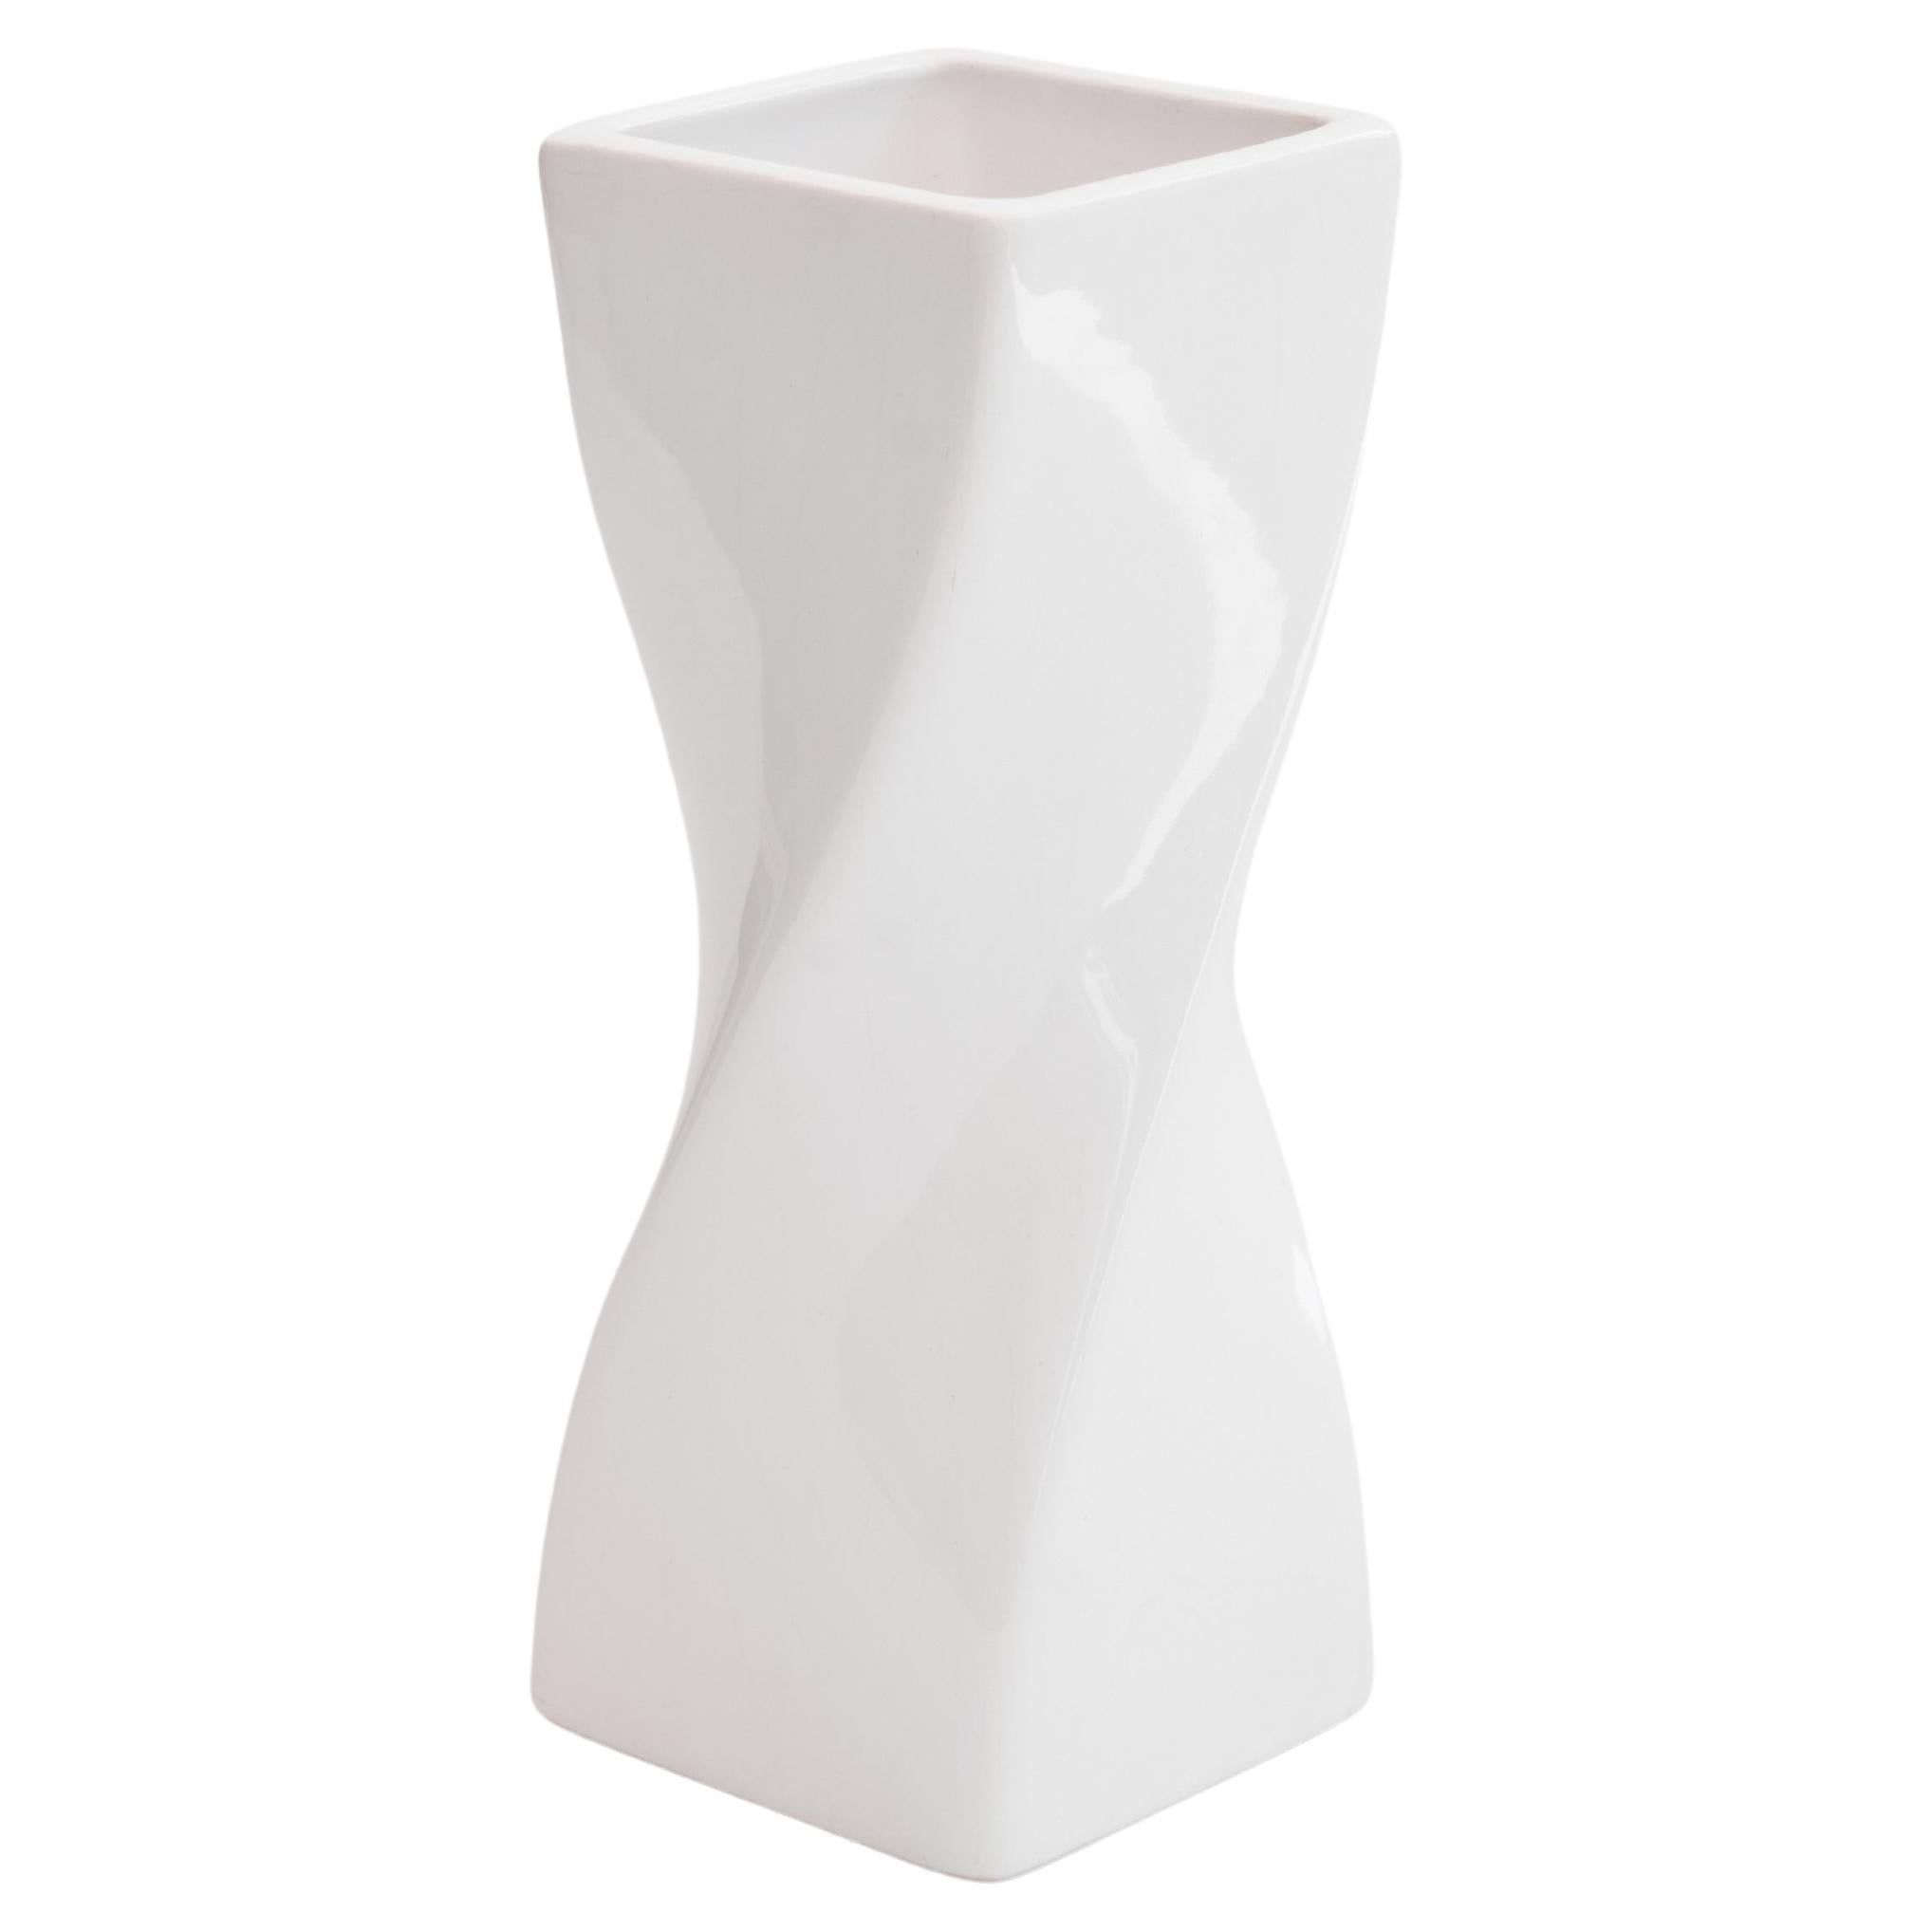 Twisted Vase in White Glazed Ceramic 1980s For Sale